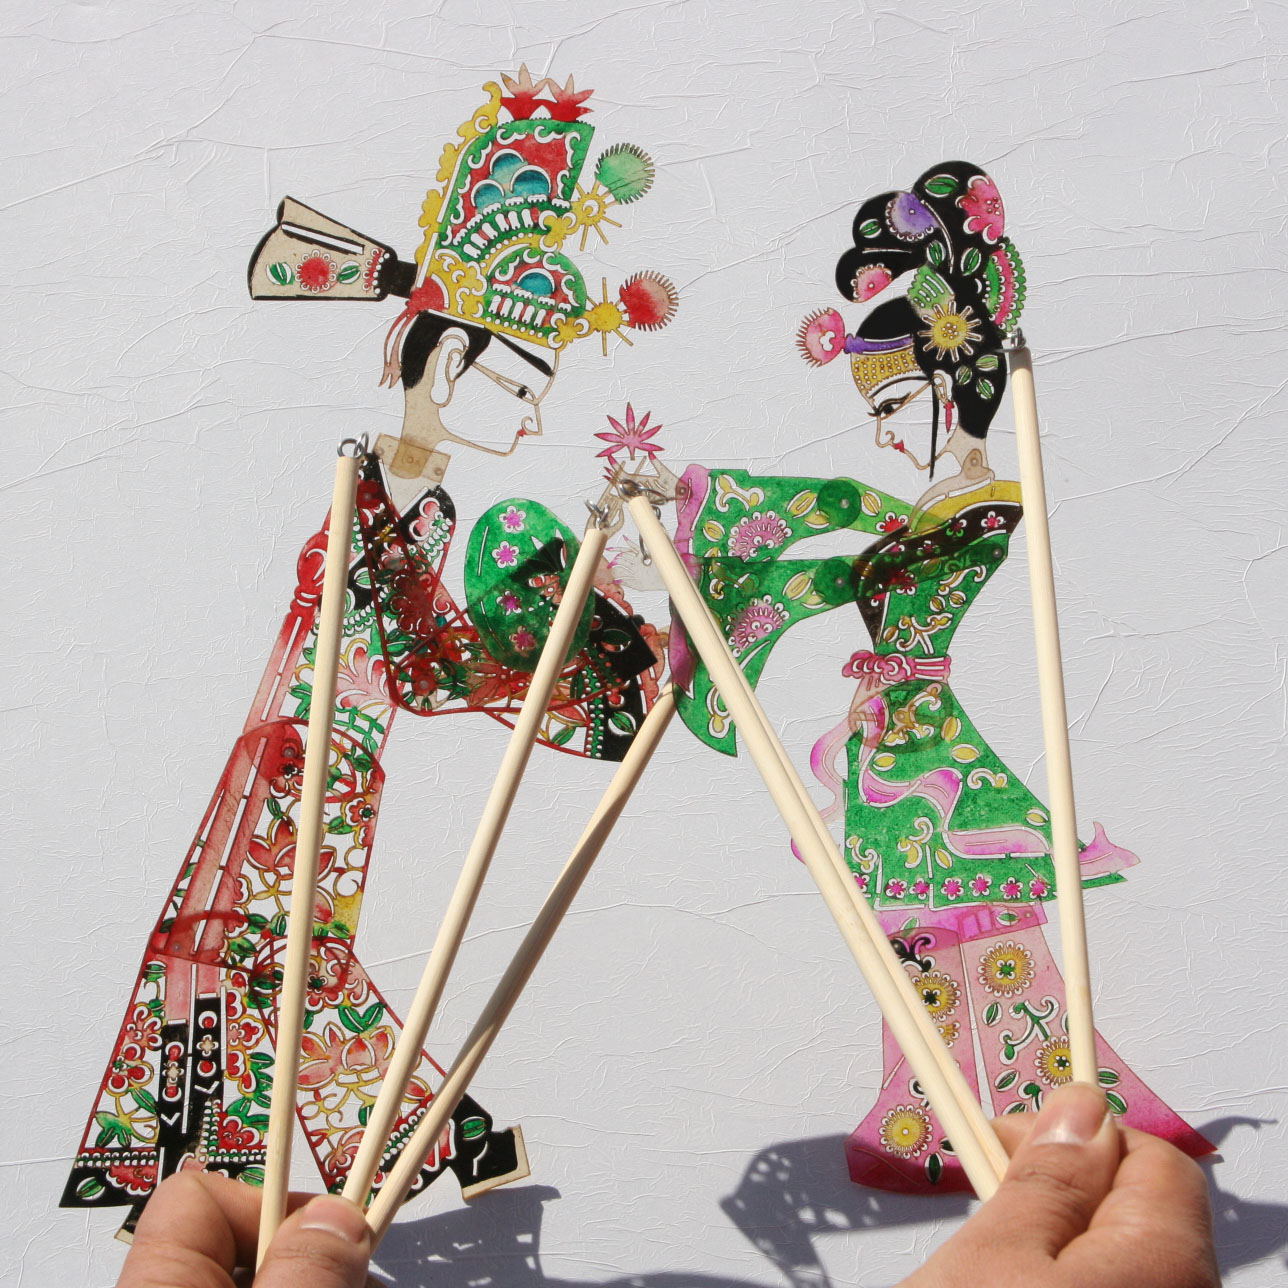 民间特色手工艺品皮影戏人偶套装纪念品送外国人的中国小礼品